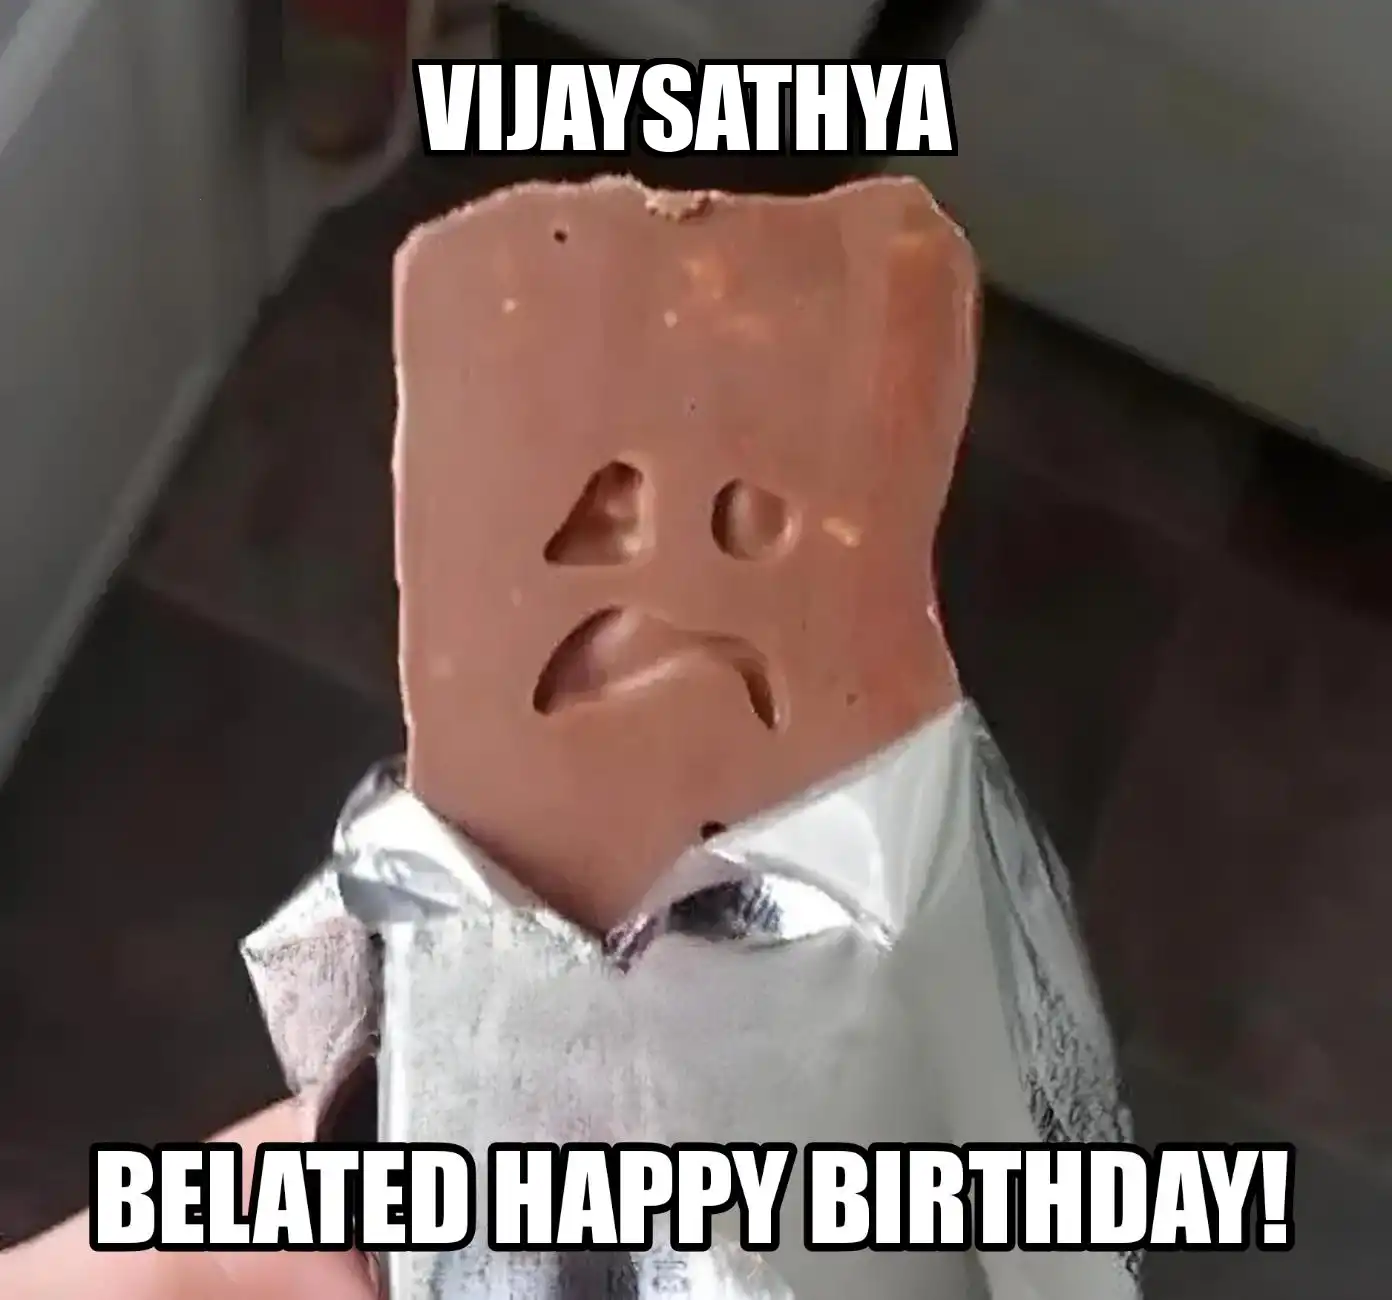 Happy Birthday Vijaysathya Belated Happy Birthday Meme